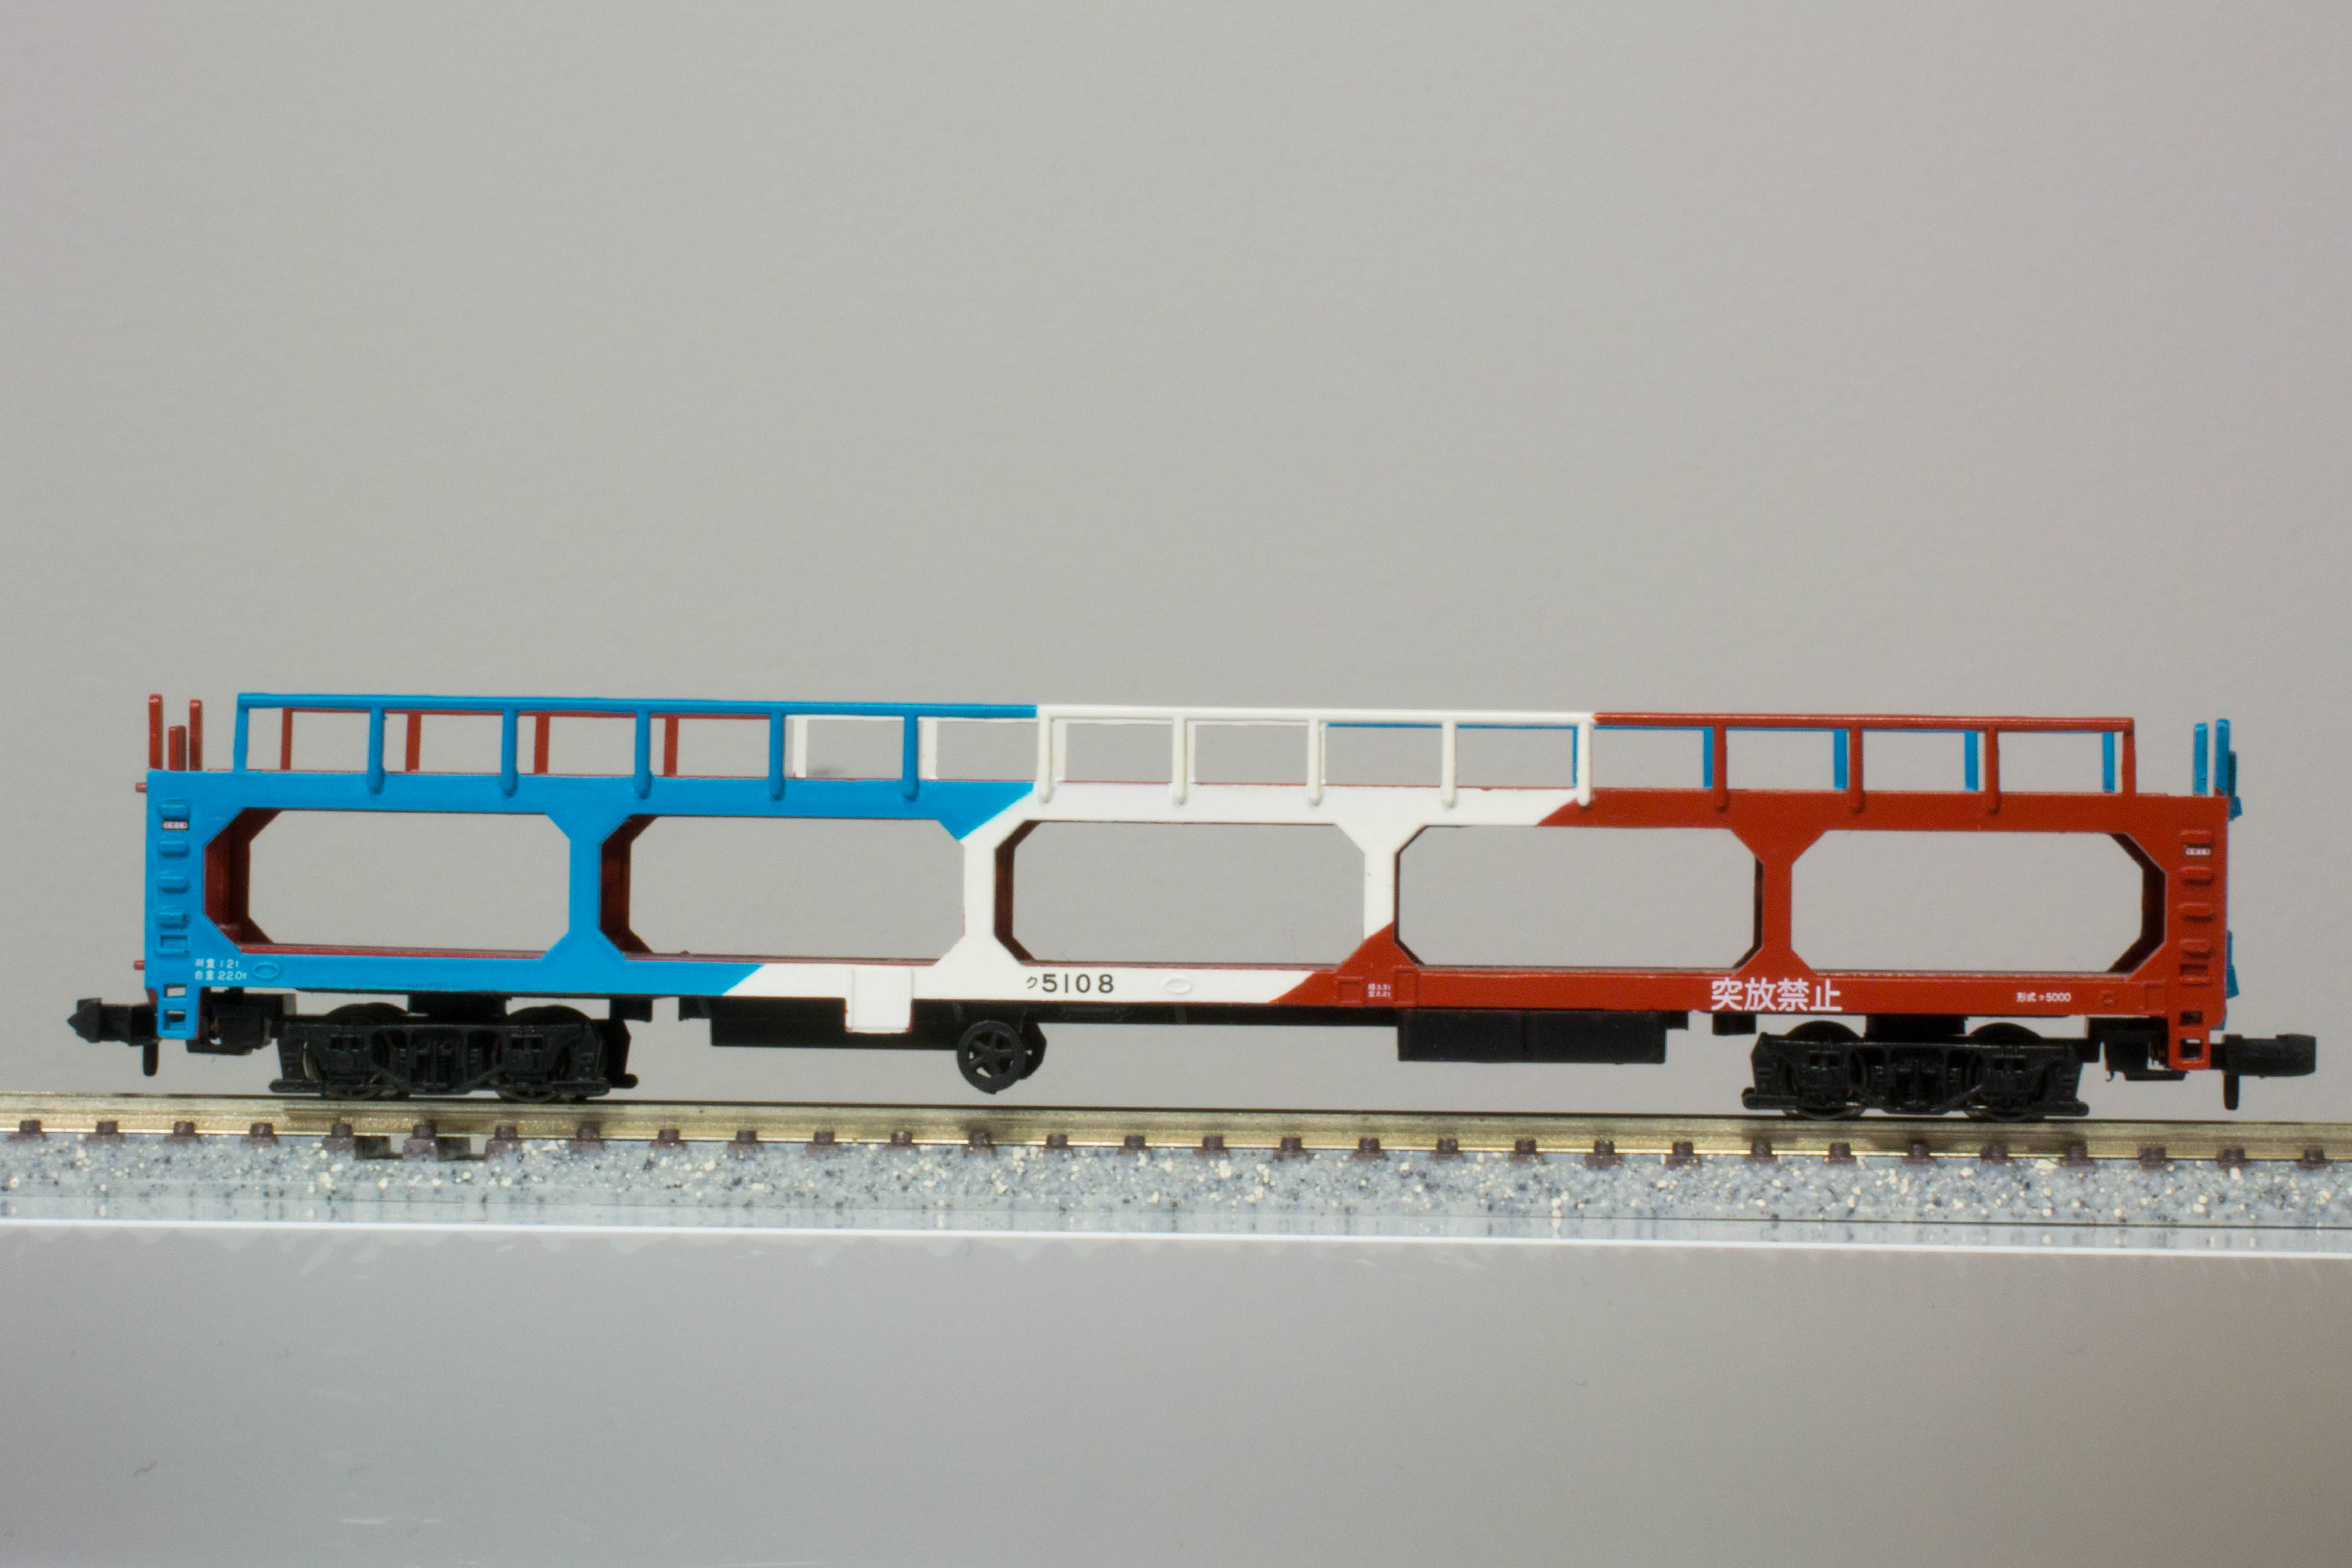 ポポンデッタ】国鉄ク5000形貨車と世界の車運車を比べてみた - 鉄道模型部